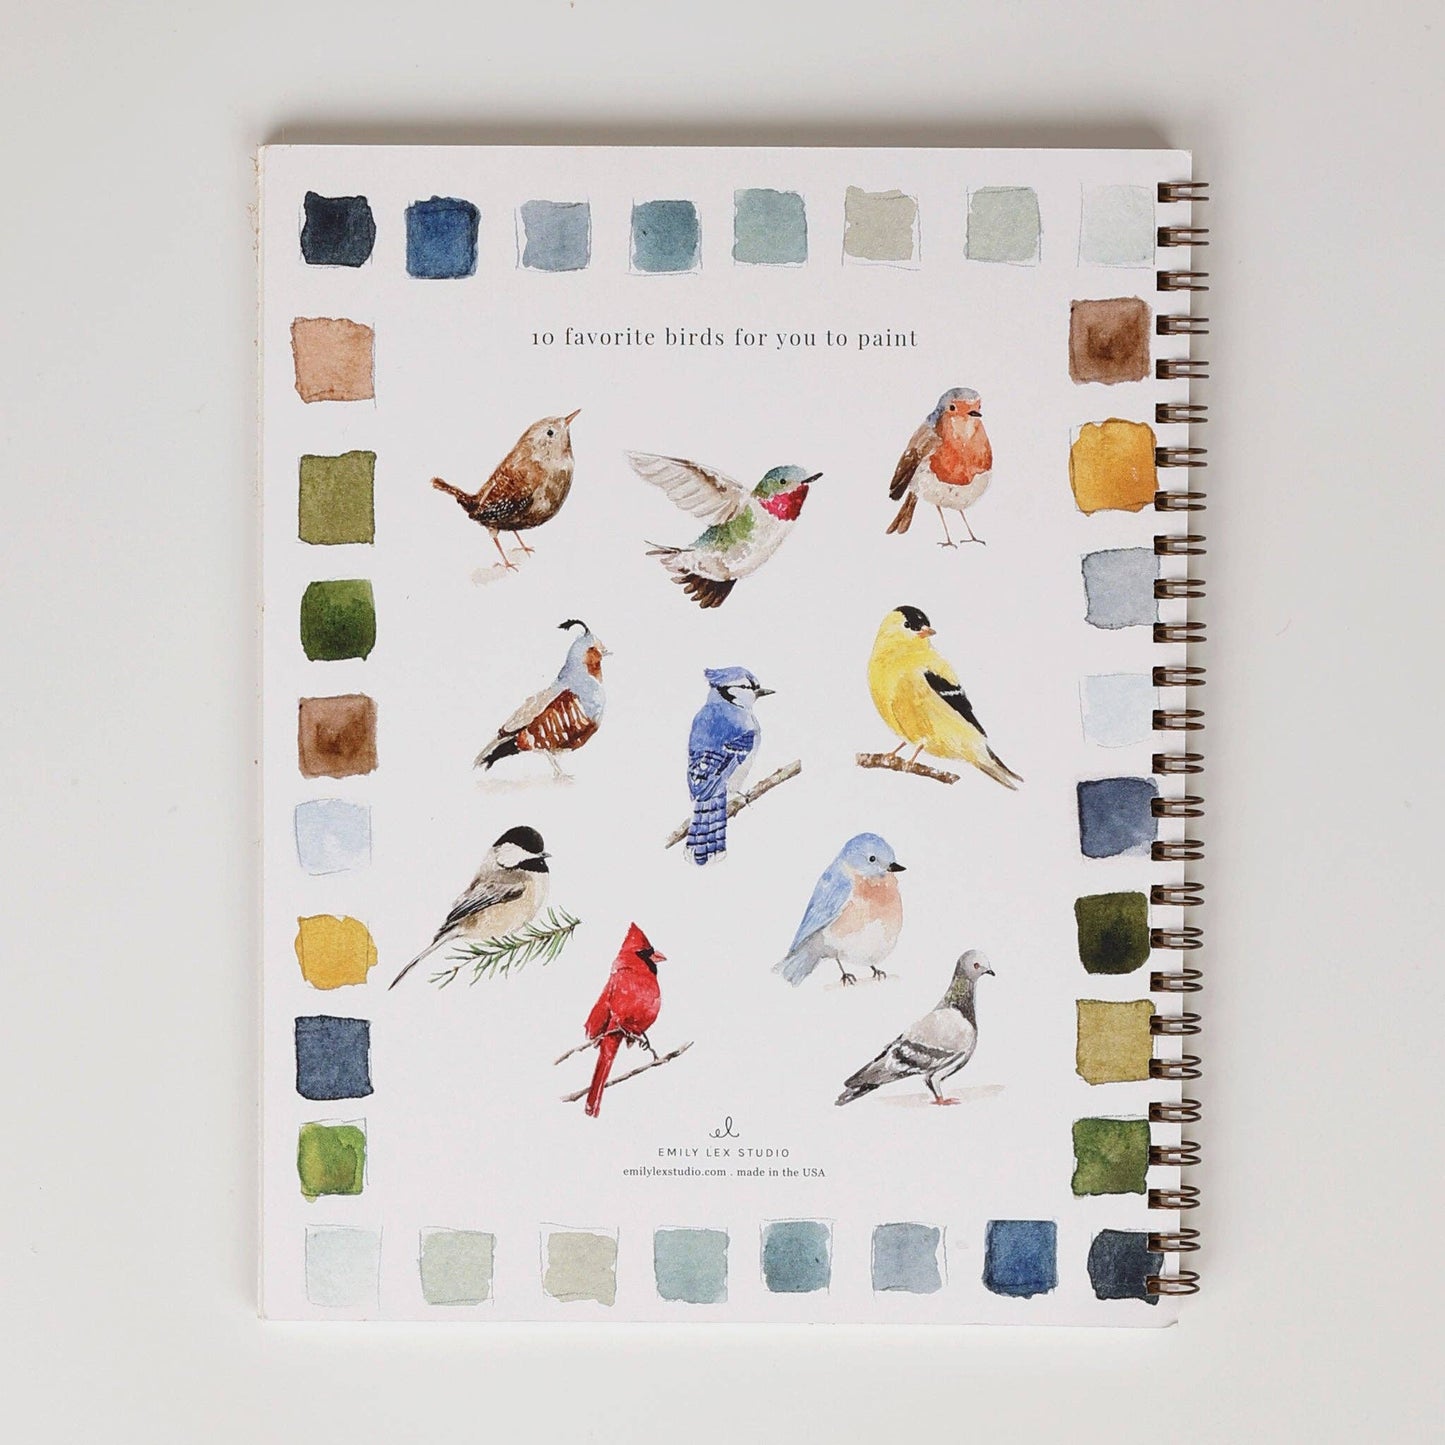 Watercolor Workbook- Birds